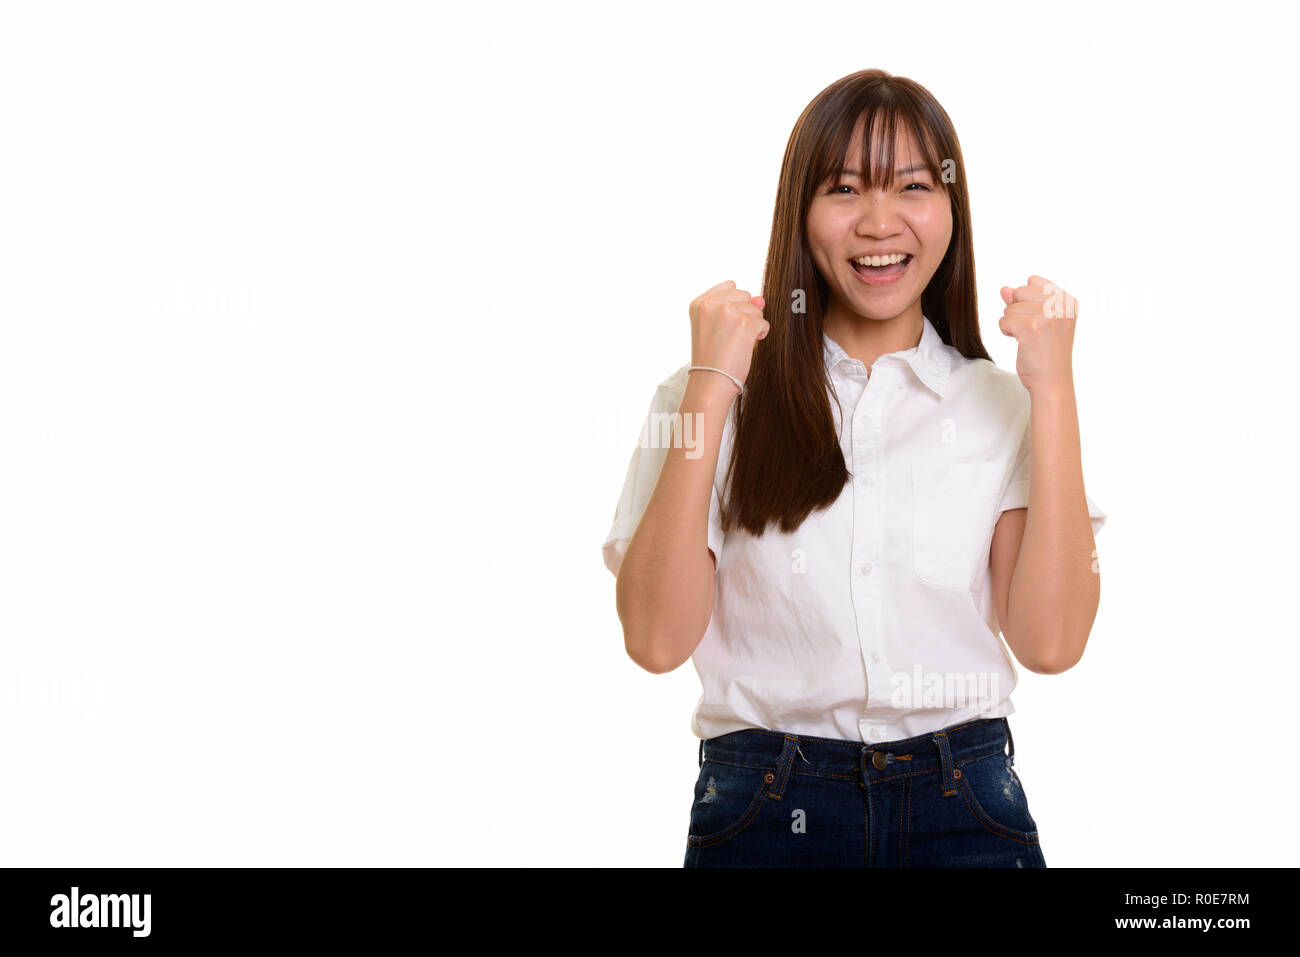 Junge glücklich Asiatischen Teenager Mädchen lächelnd Suchen motiviert Stockfoto